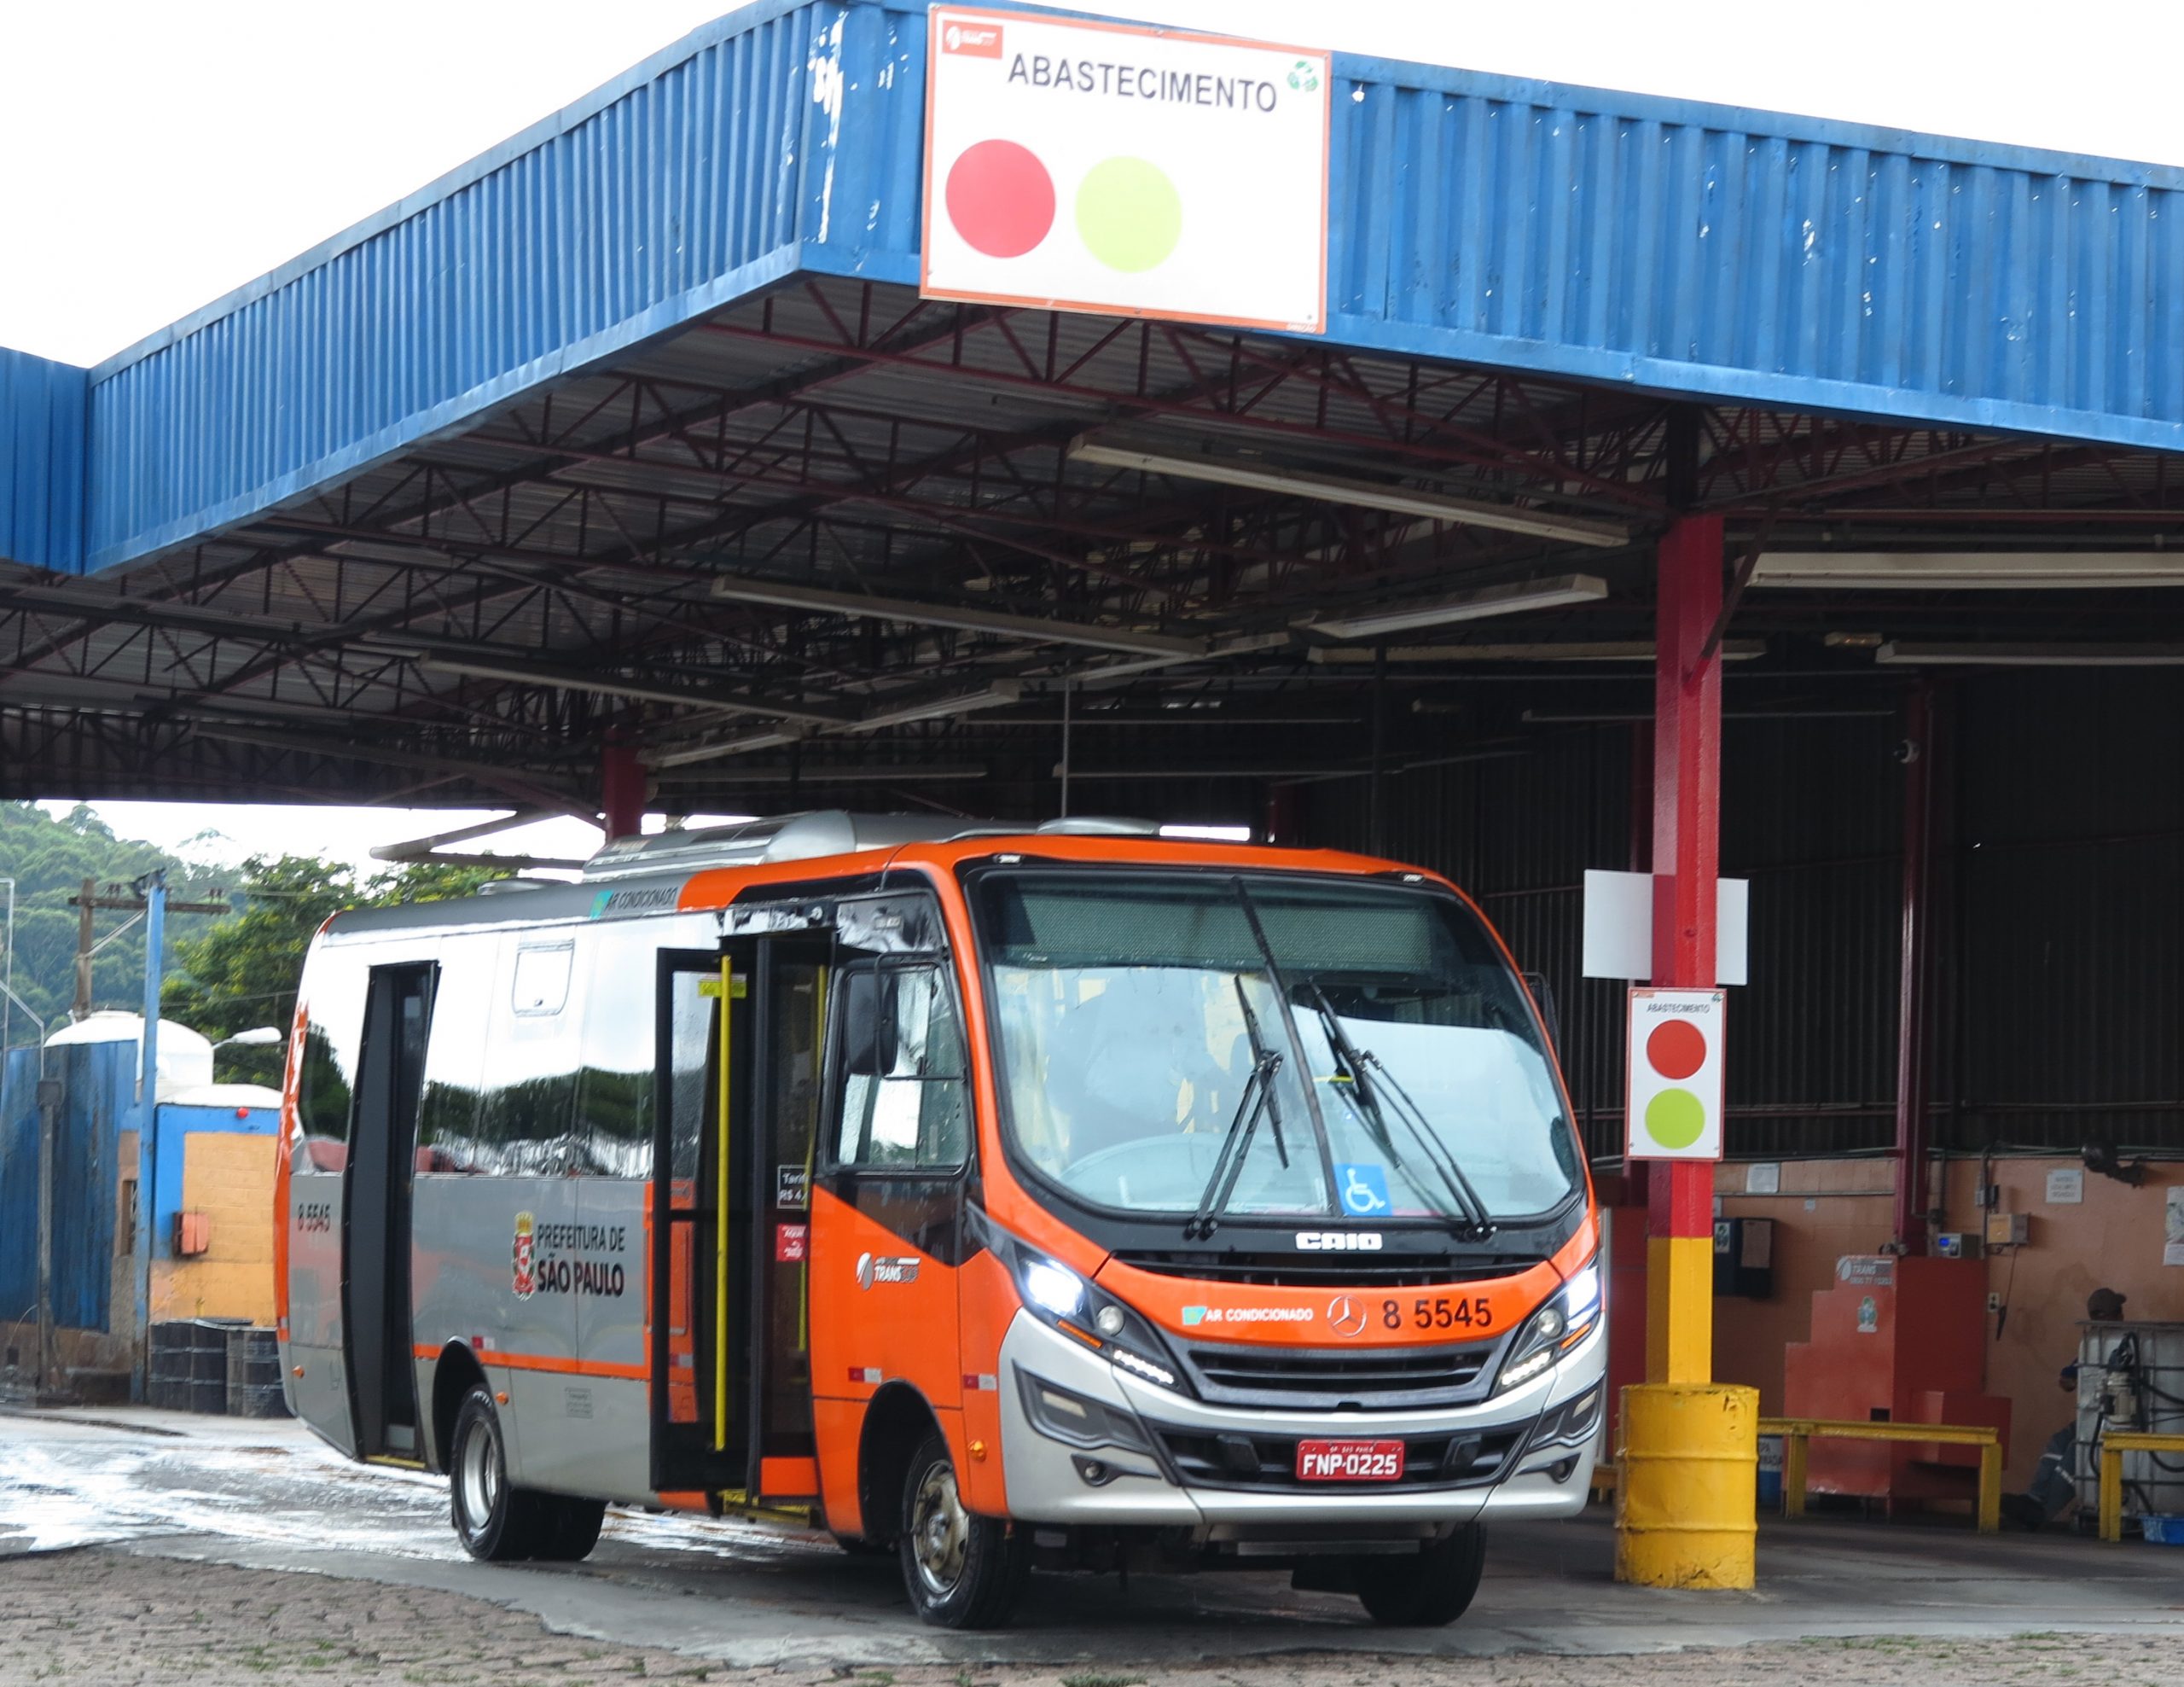 Ônibus do tipo "mini" estacionado para abastecimento em uma garagem de ônibus.